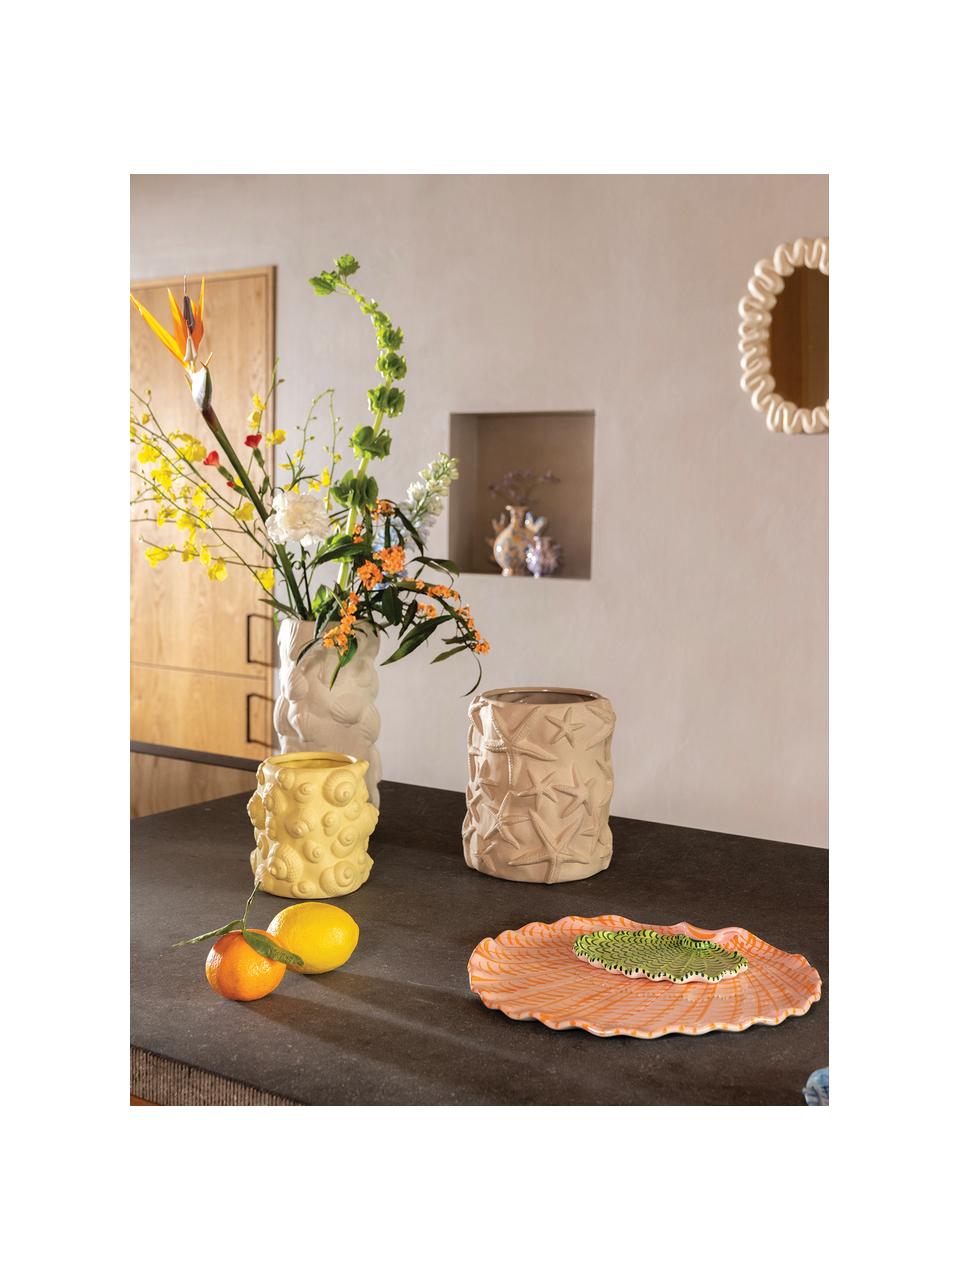 Servírovací talíř Shellegance, D 31 cm, Glazovaná kamenina, Růžová, oranžová, Š 31 cm, H 28 cm